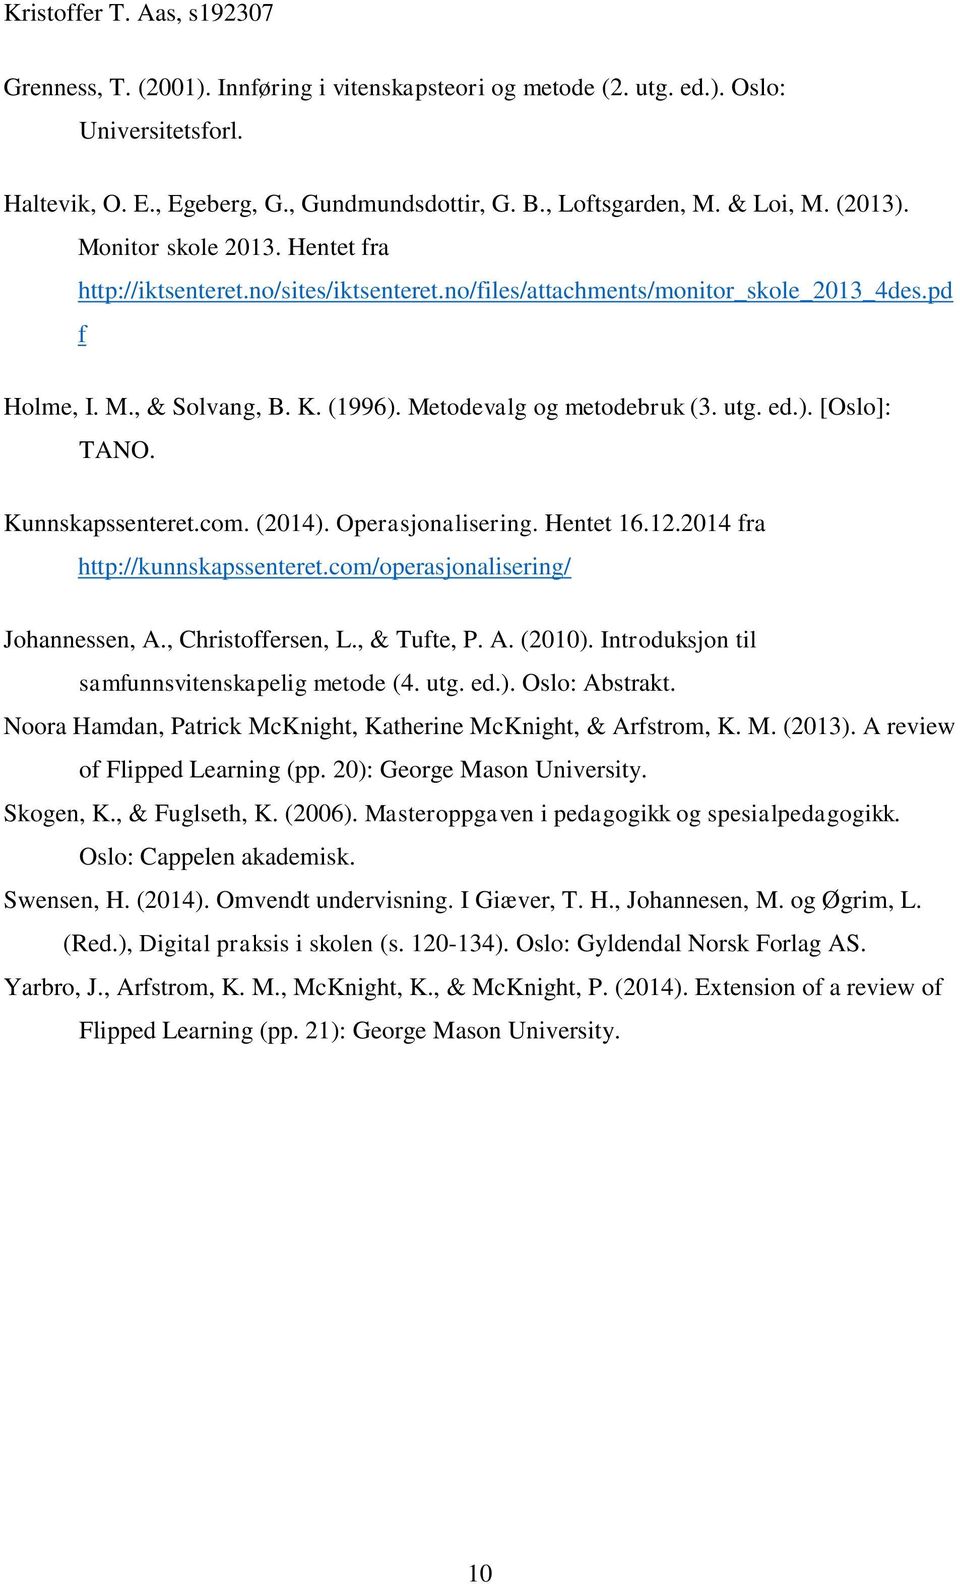 Kunnskapssenteret.com. (2014). Operasjonalisering. Hentet 16.12.2014 fra http://kunnskapssenteret.com/operasjonalisering/ Johannessen, A., Christoffersen, L., & Tufte, P. A. (2010).